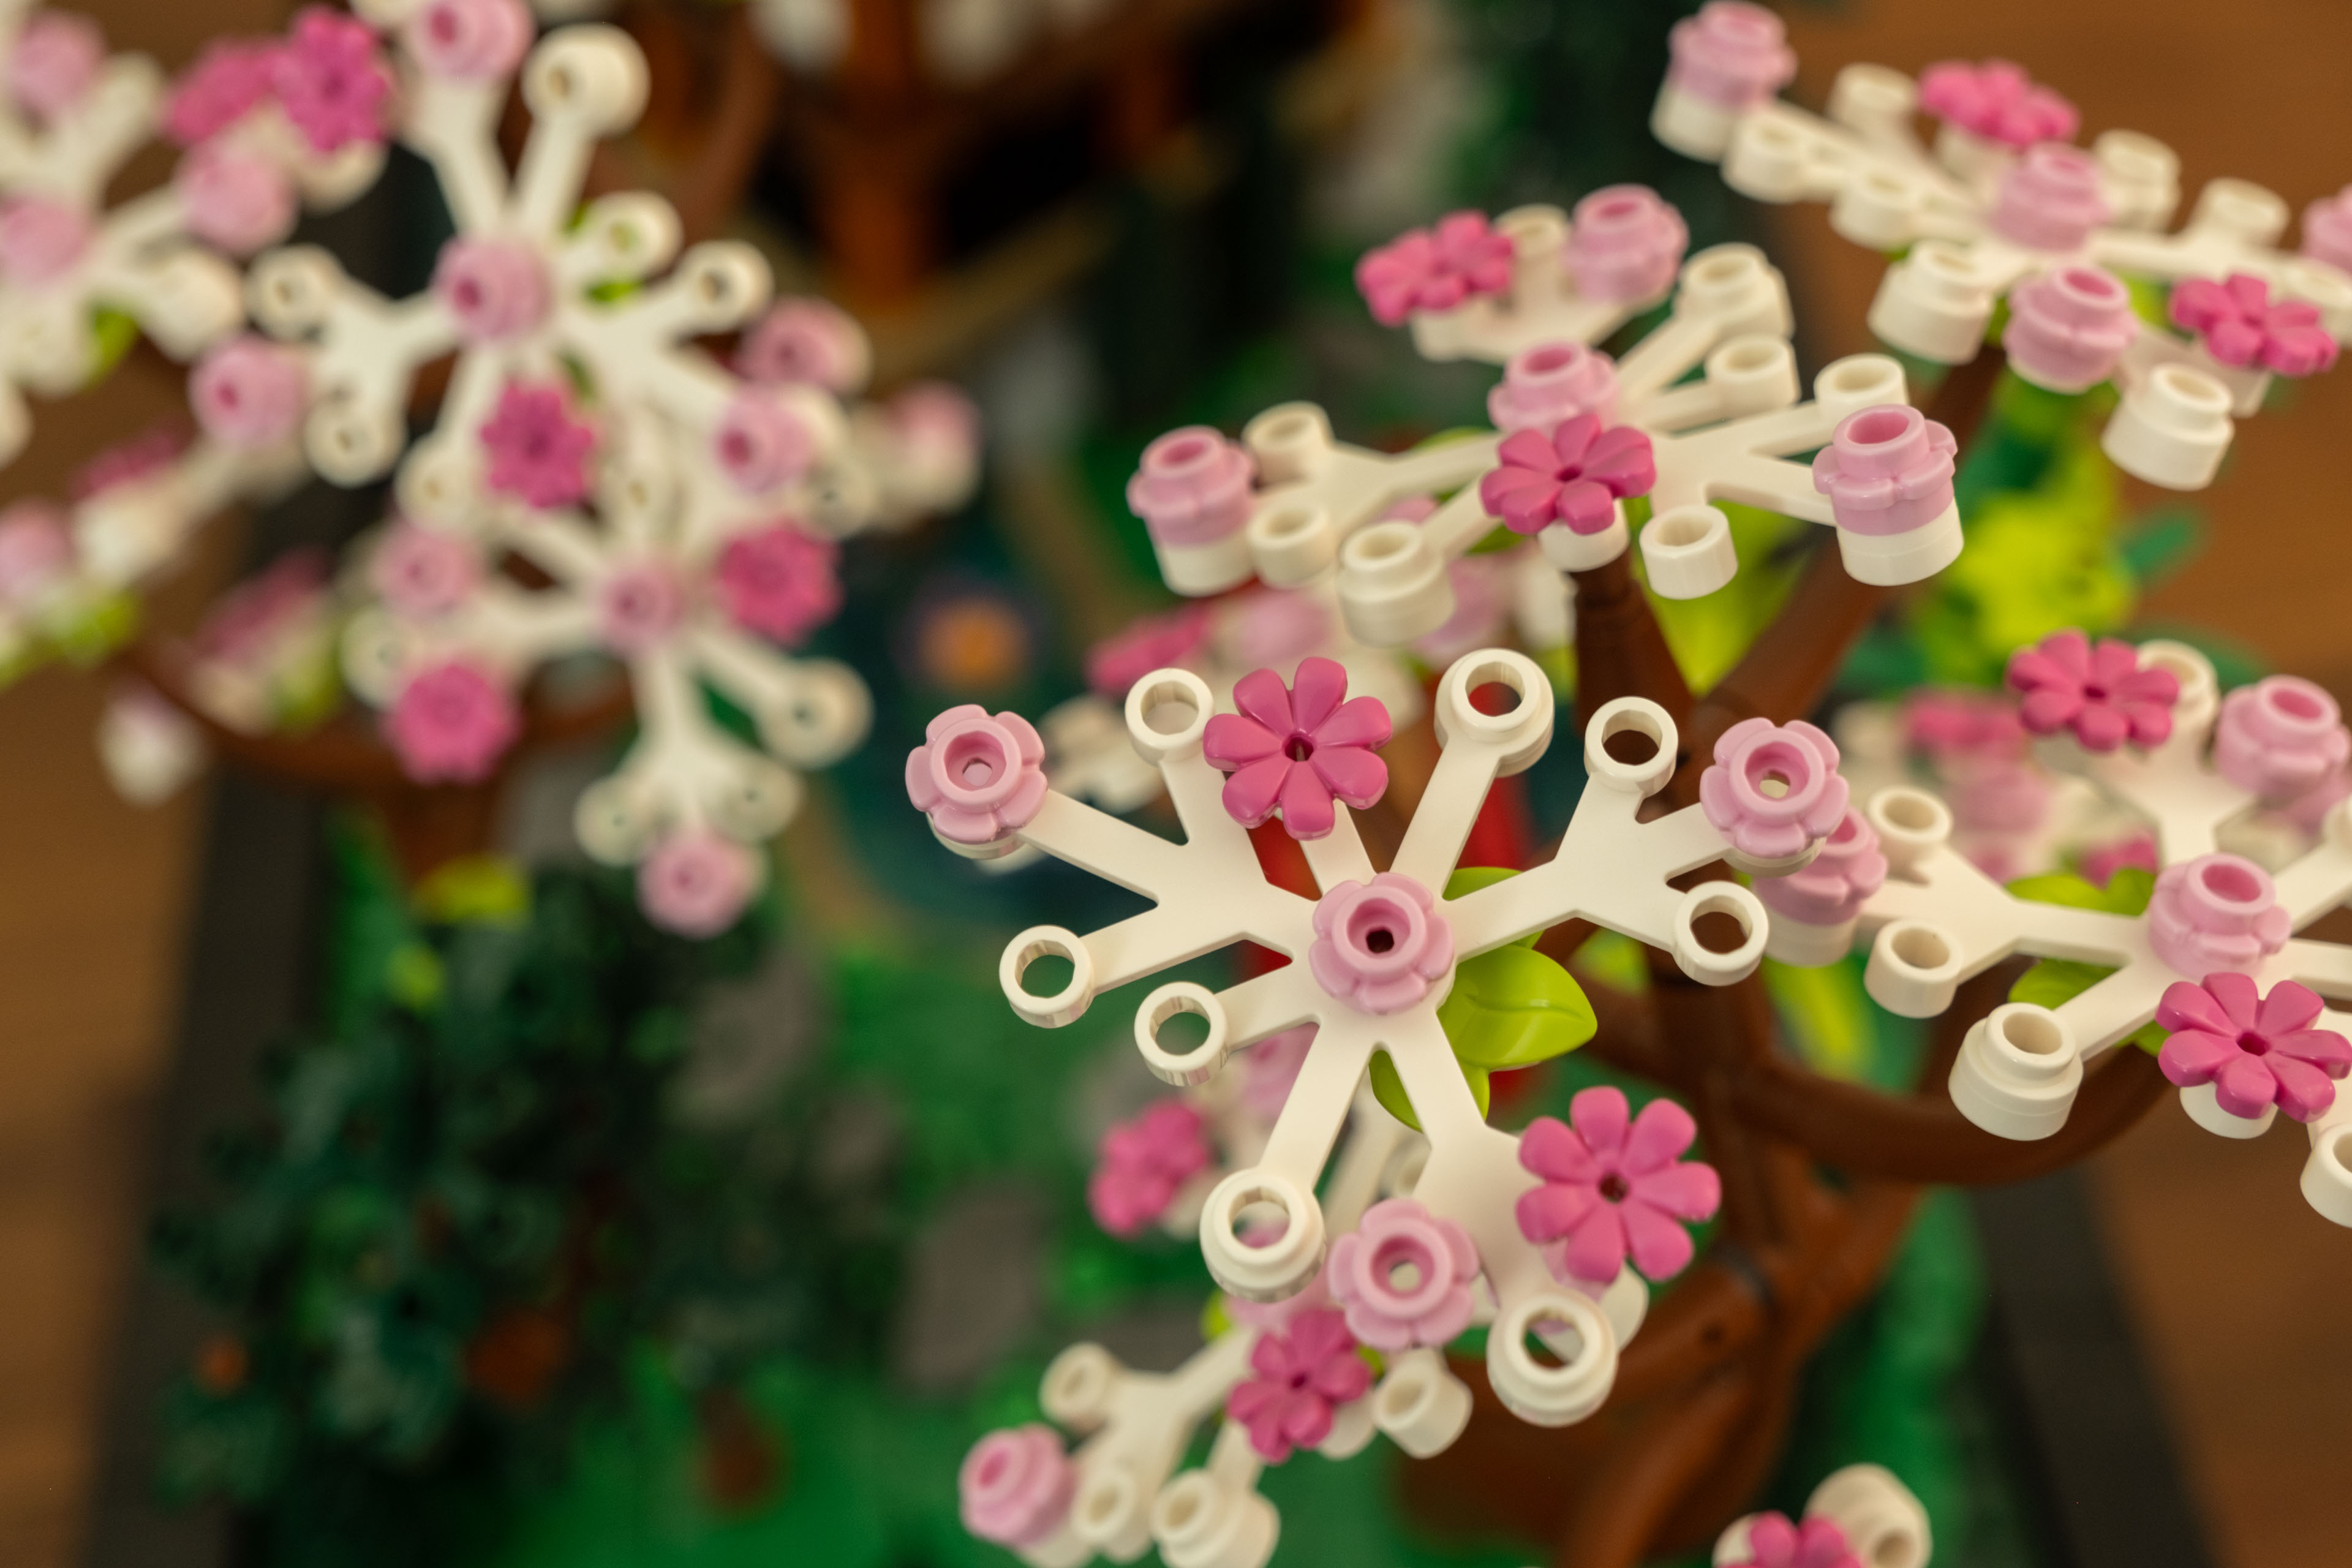 a close-up shot of the blooming sakuras